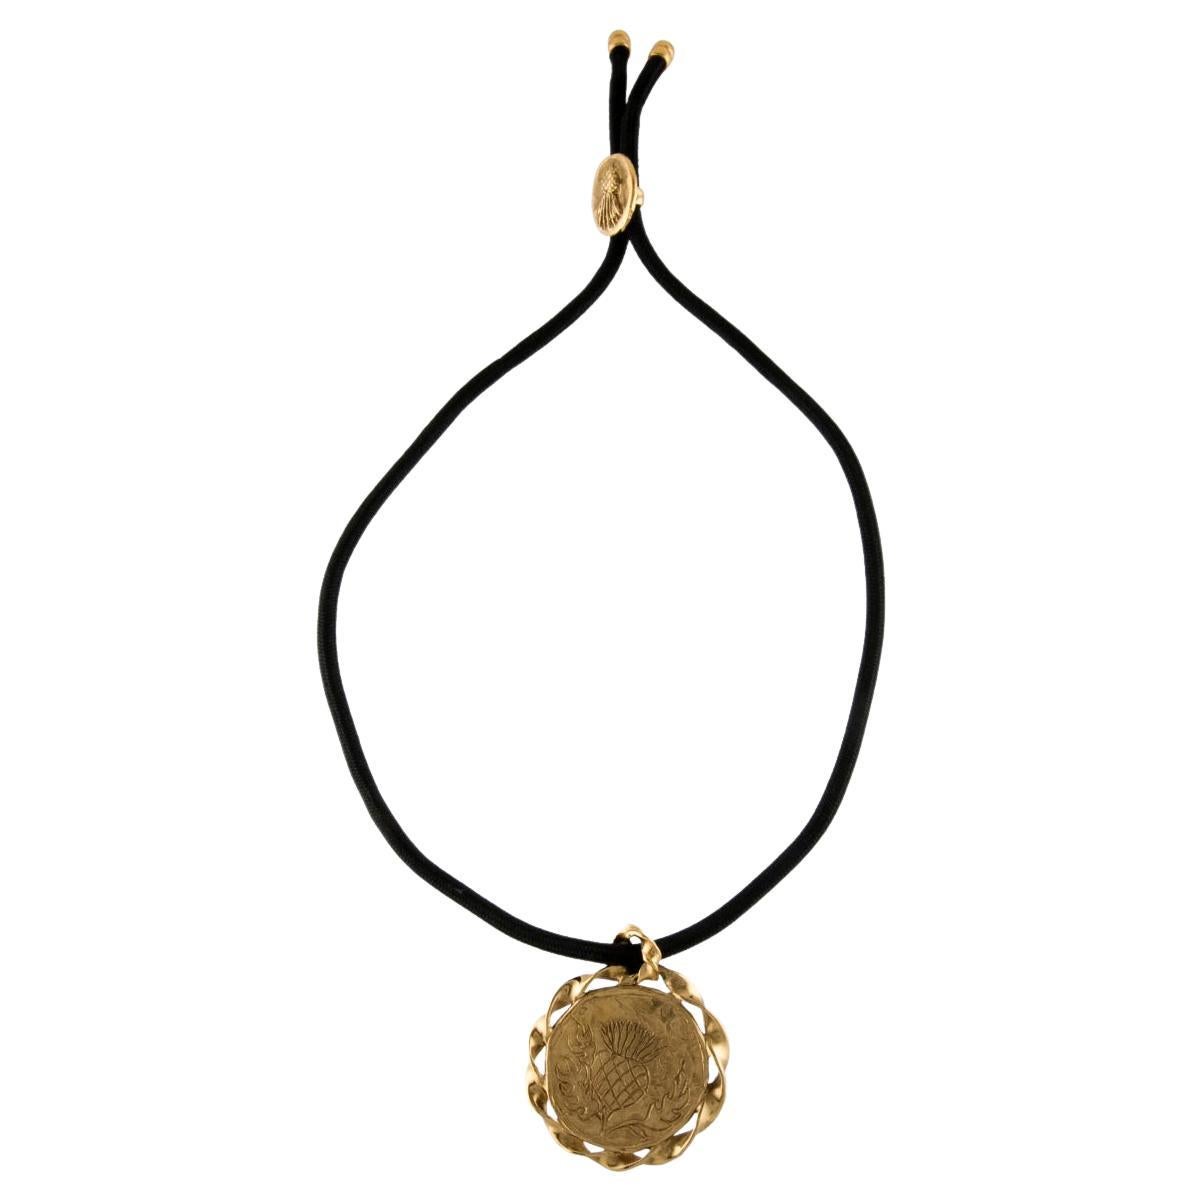 Yves Saint Laurent, collier pendentif médaillon en forme de chardon, années 1980